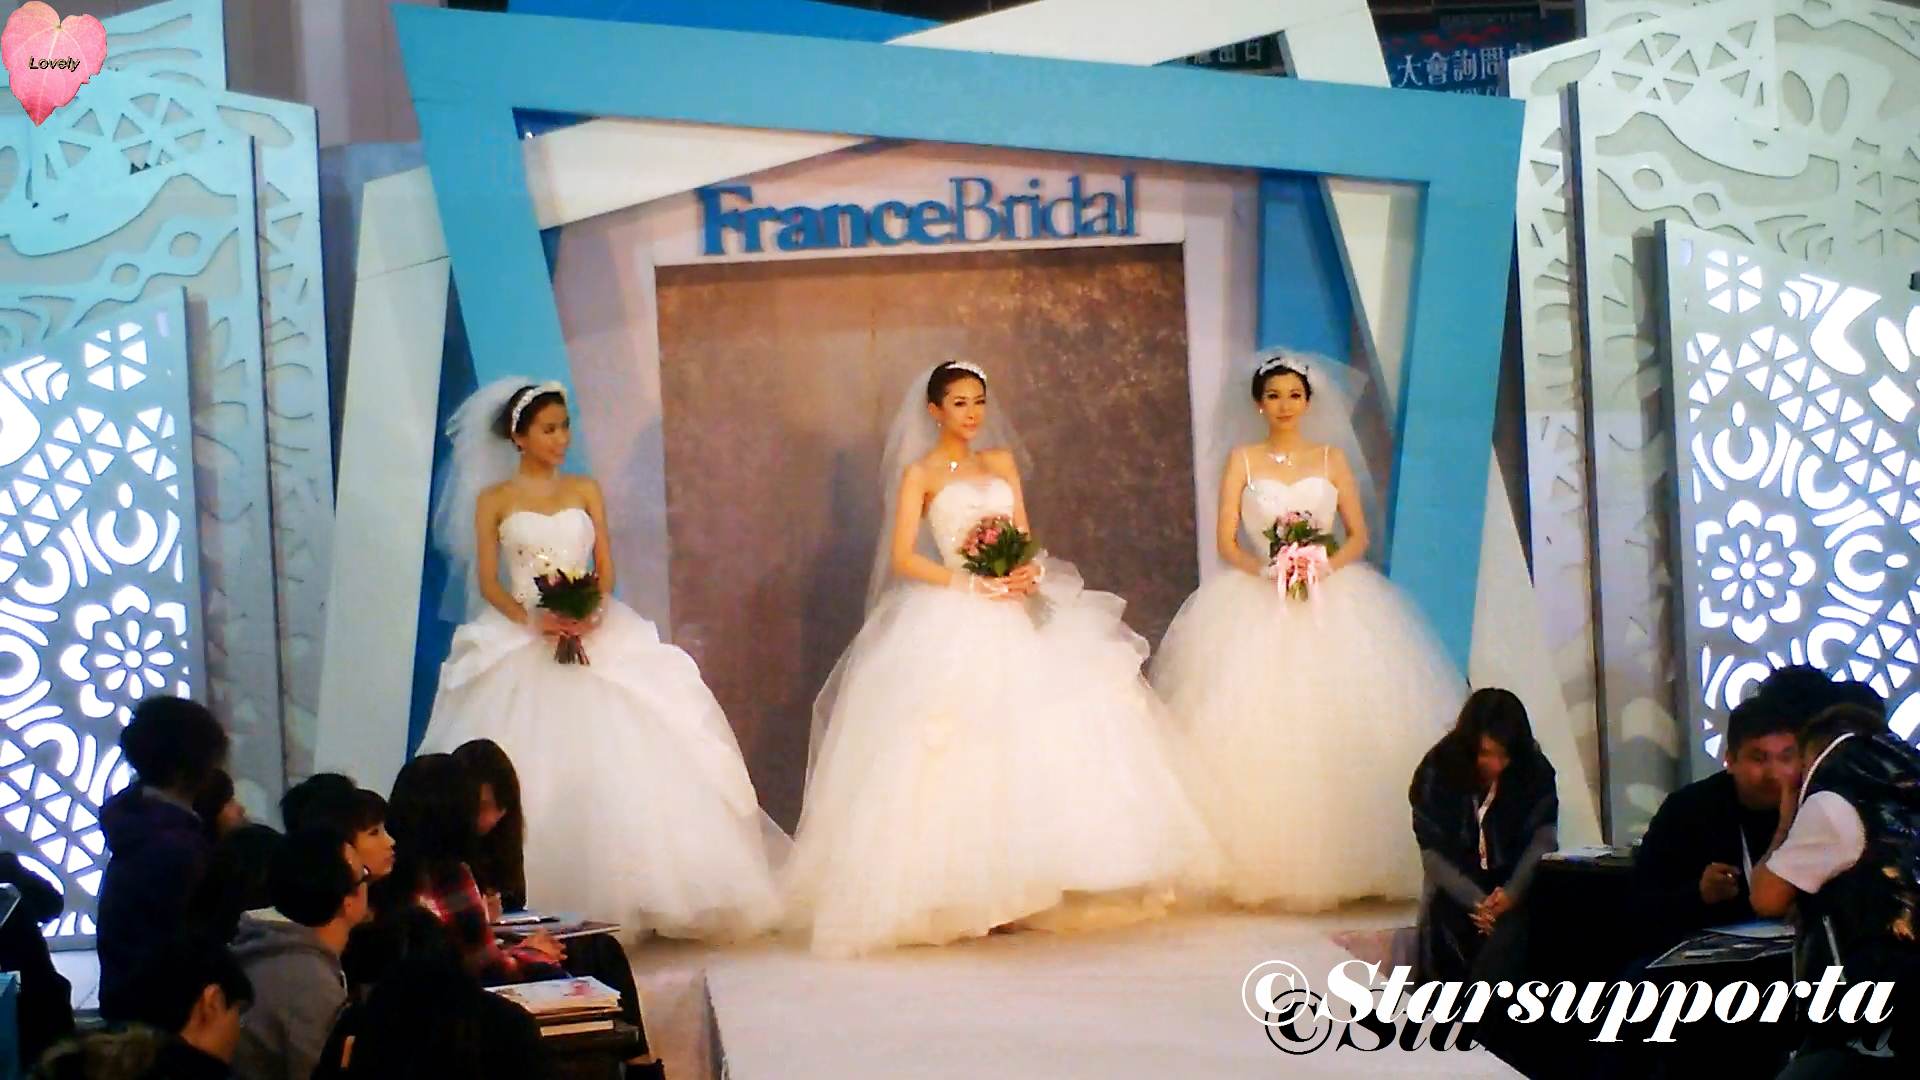 20111218 聖誔婚紗、婚宴及結婚服務博覽 - France Bridal @ 香港會議展覽中心 HKCEC (video)